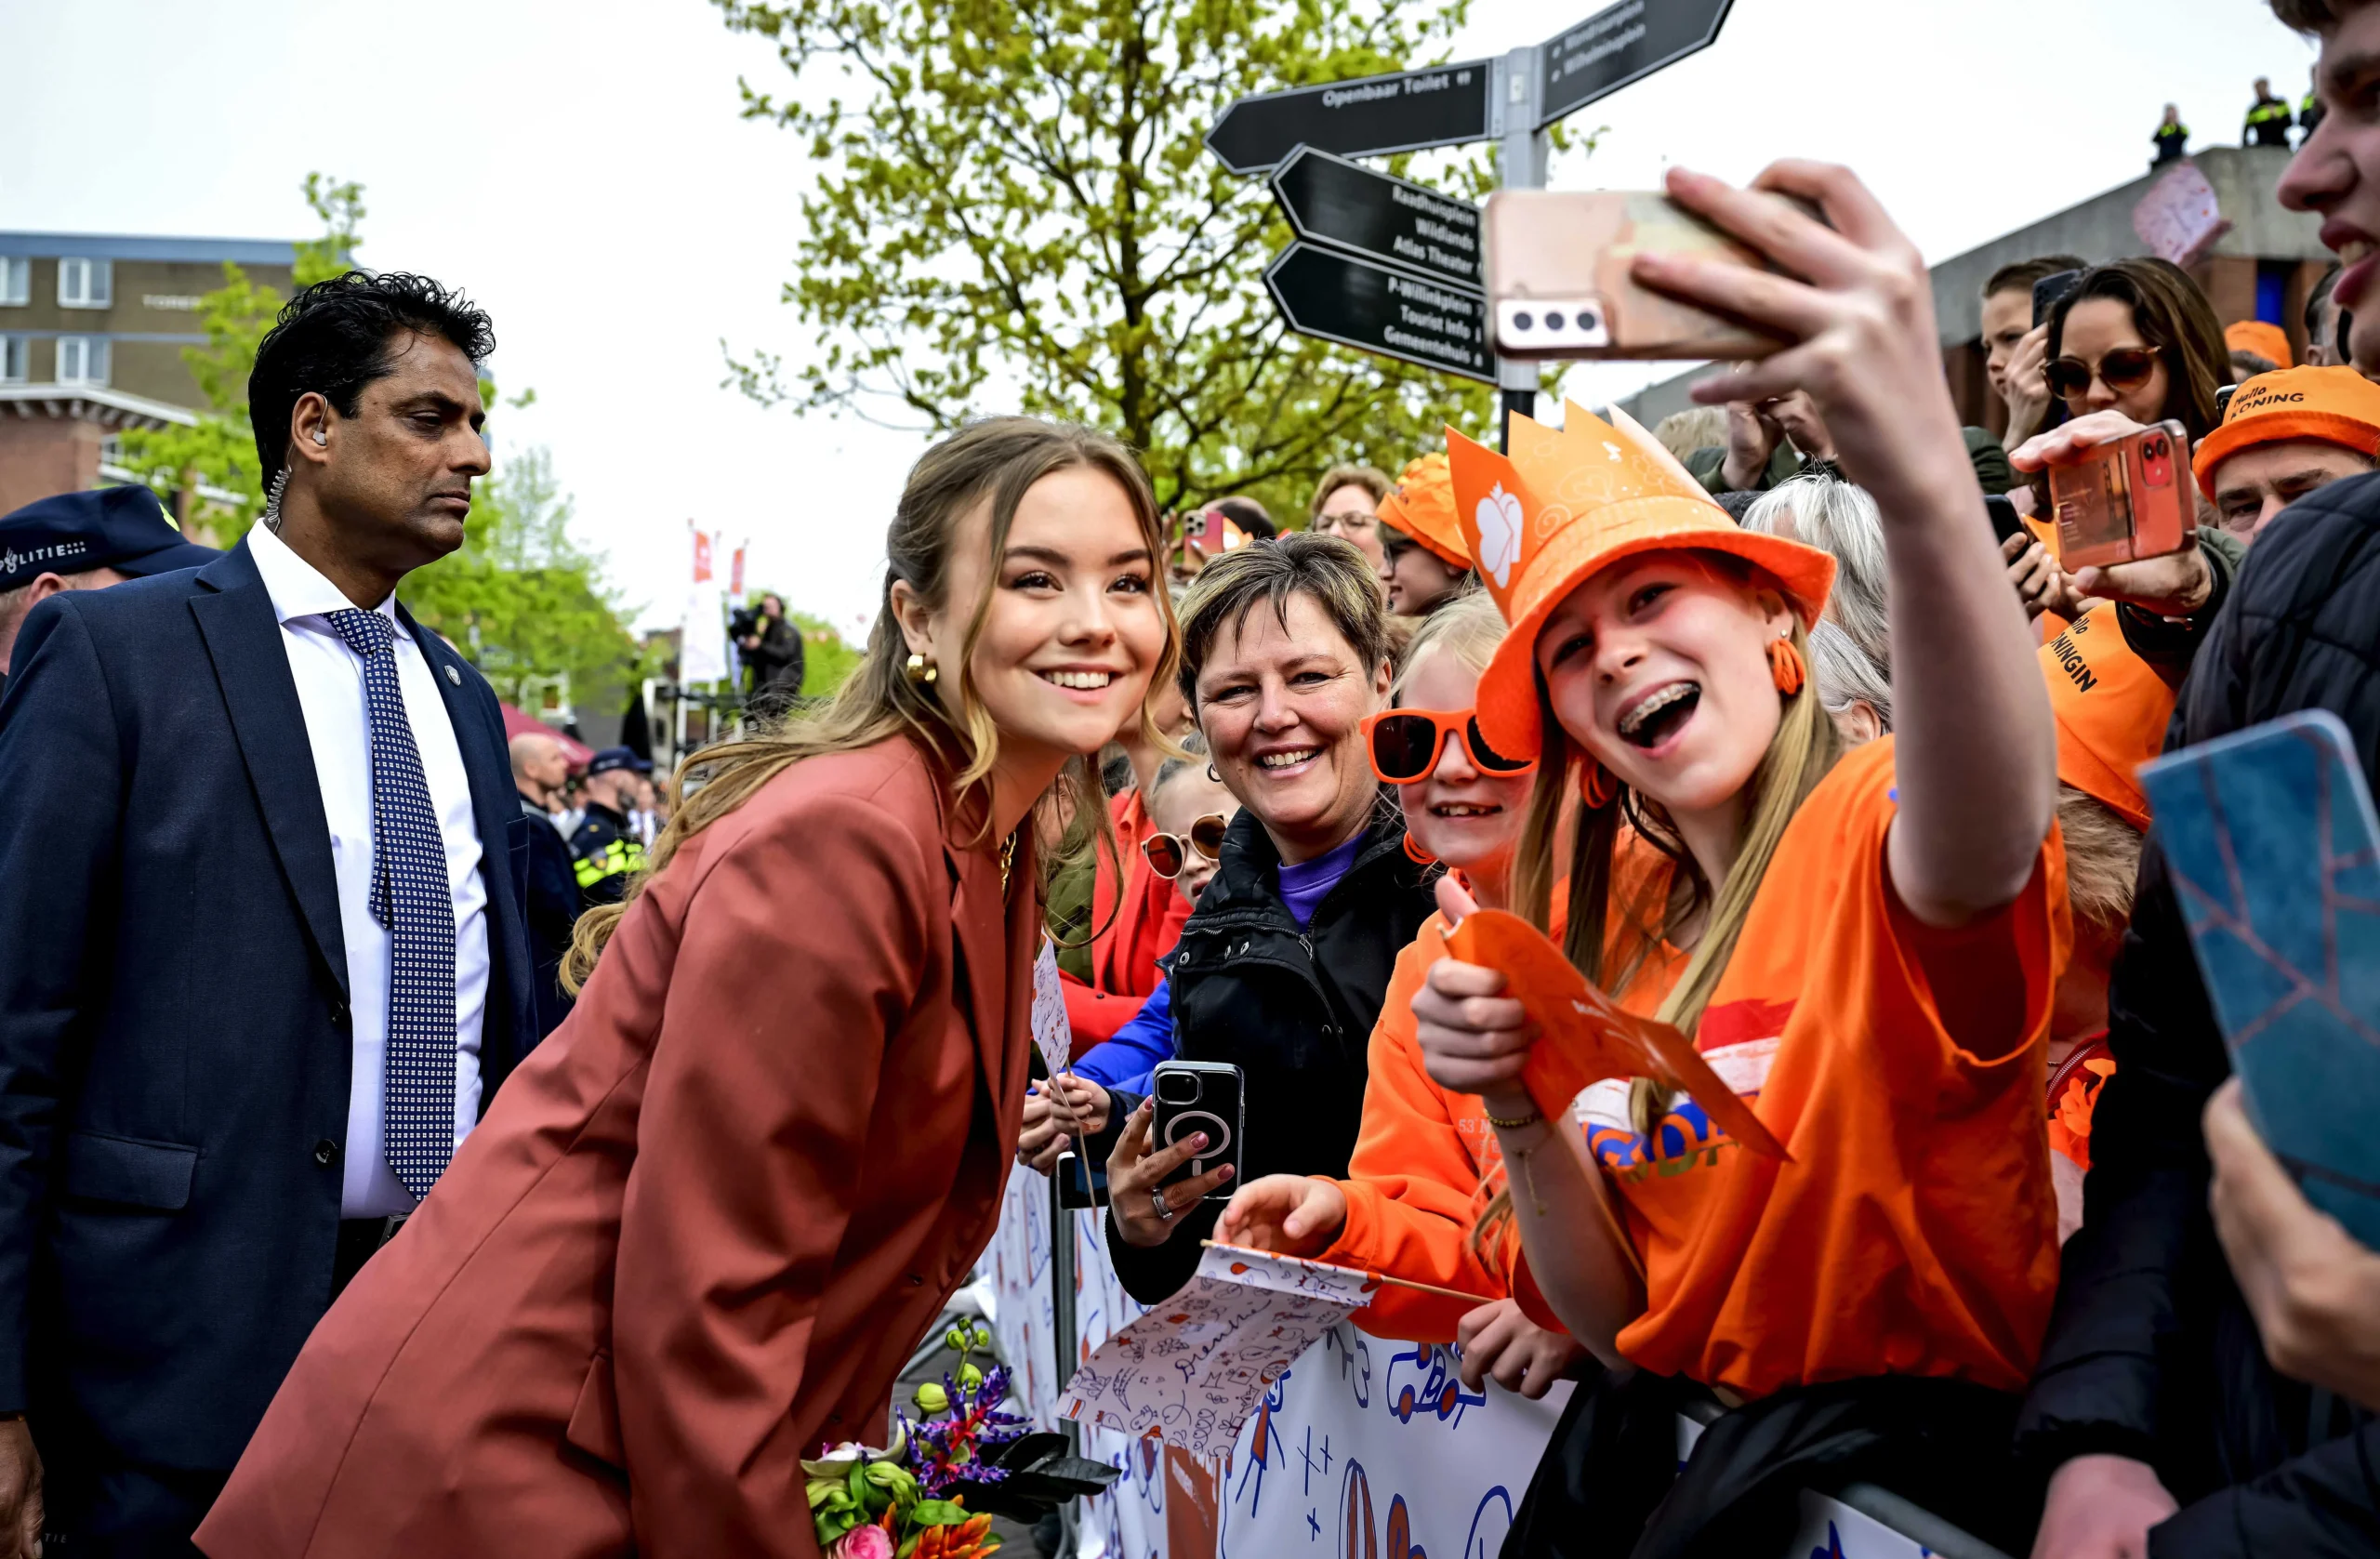 Prinzessin Ariane macht ein Selfie mit einer jungen Frau. © picture alliance / ANP | Mischa Schoemaker